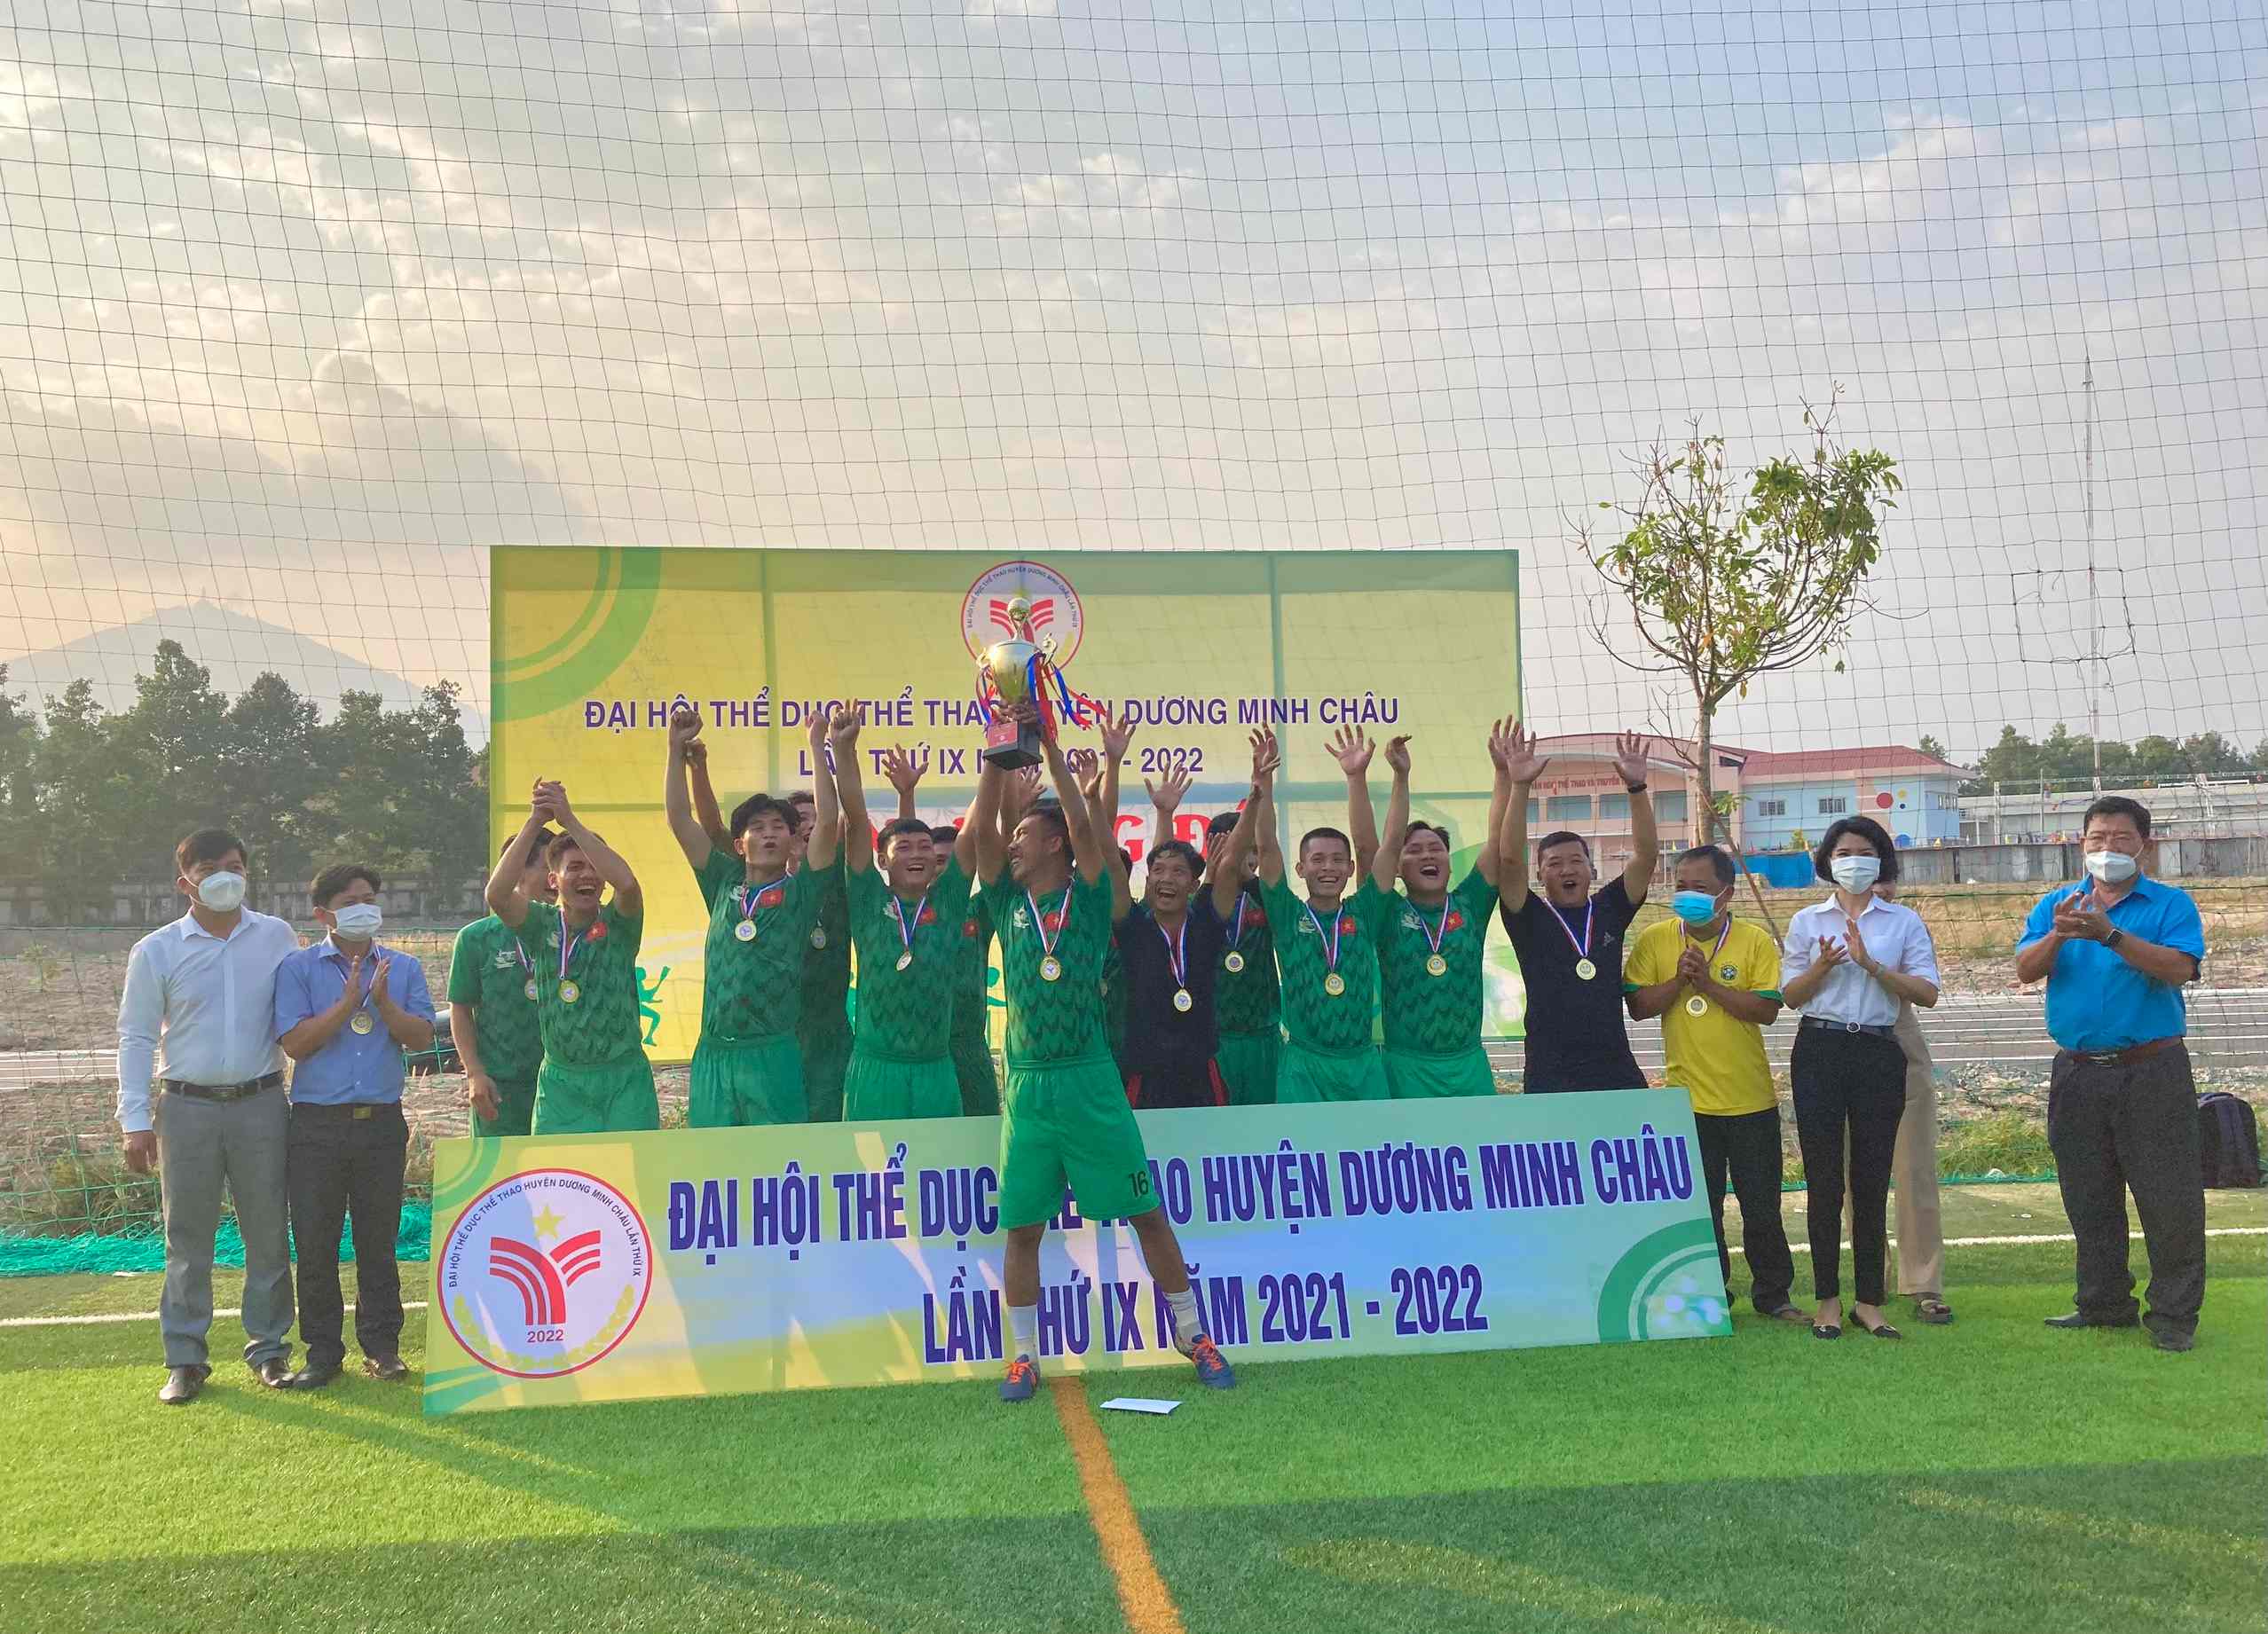 Huyện Dương Minh Châu: Trao giải bóng đá Đại hội Thể dục thể thao huyện lần thứ IX năm 2021-2022